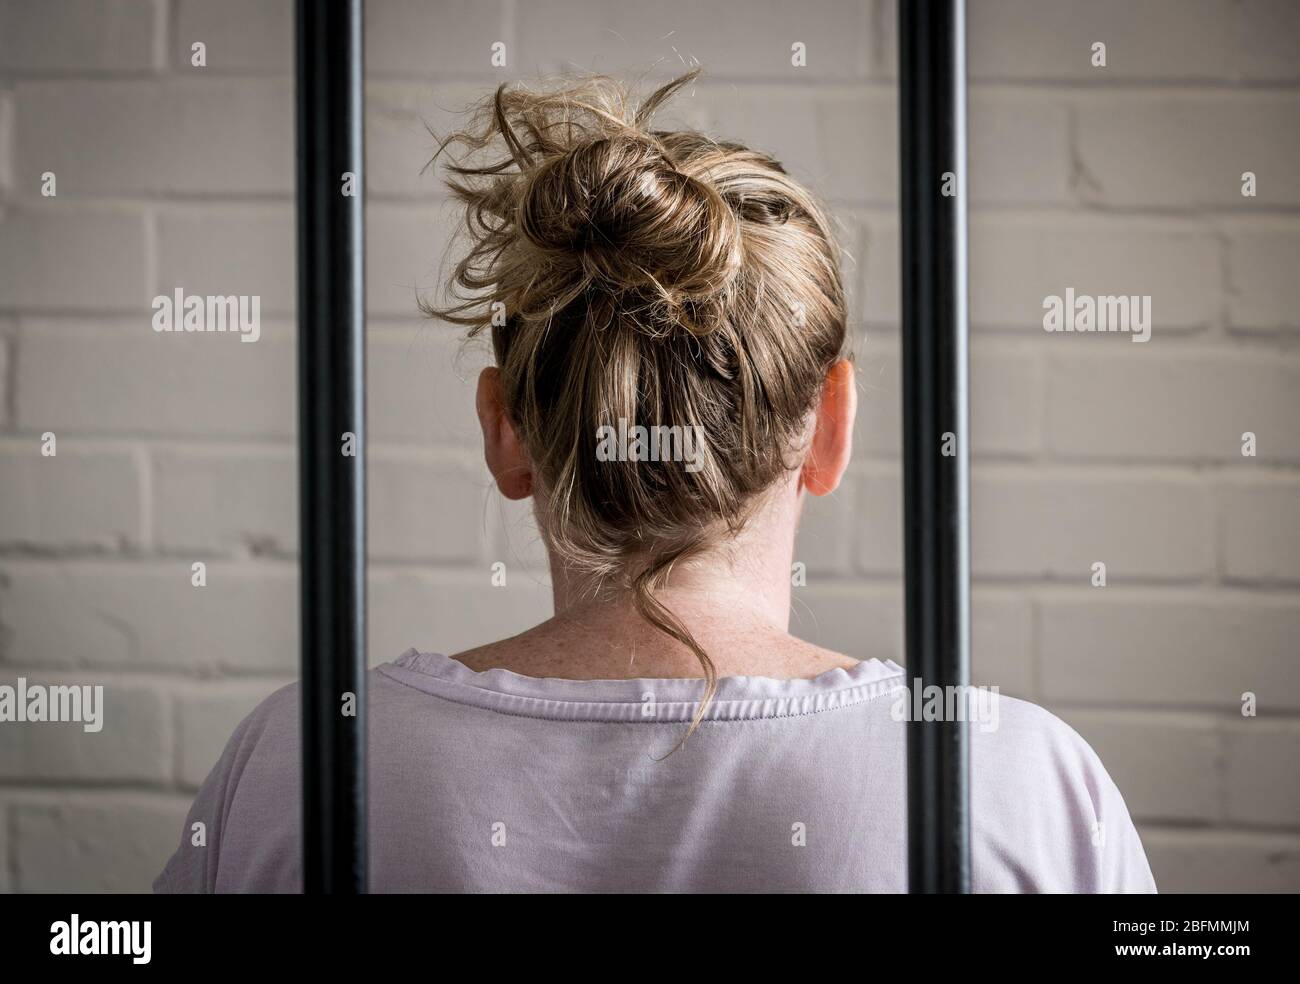 Eine weibliche Gefangene hinter Gittern in einem Frauengefängnis. Bild nach Modell gestellt. Stockfoto